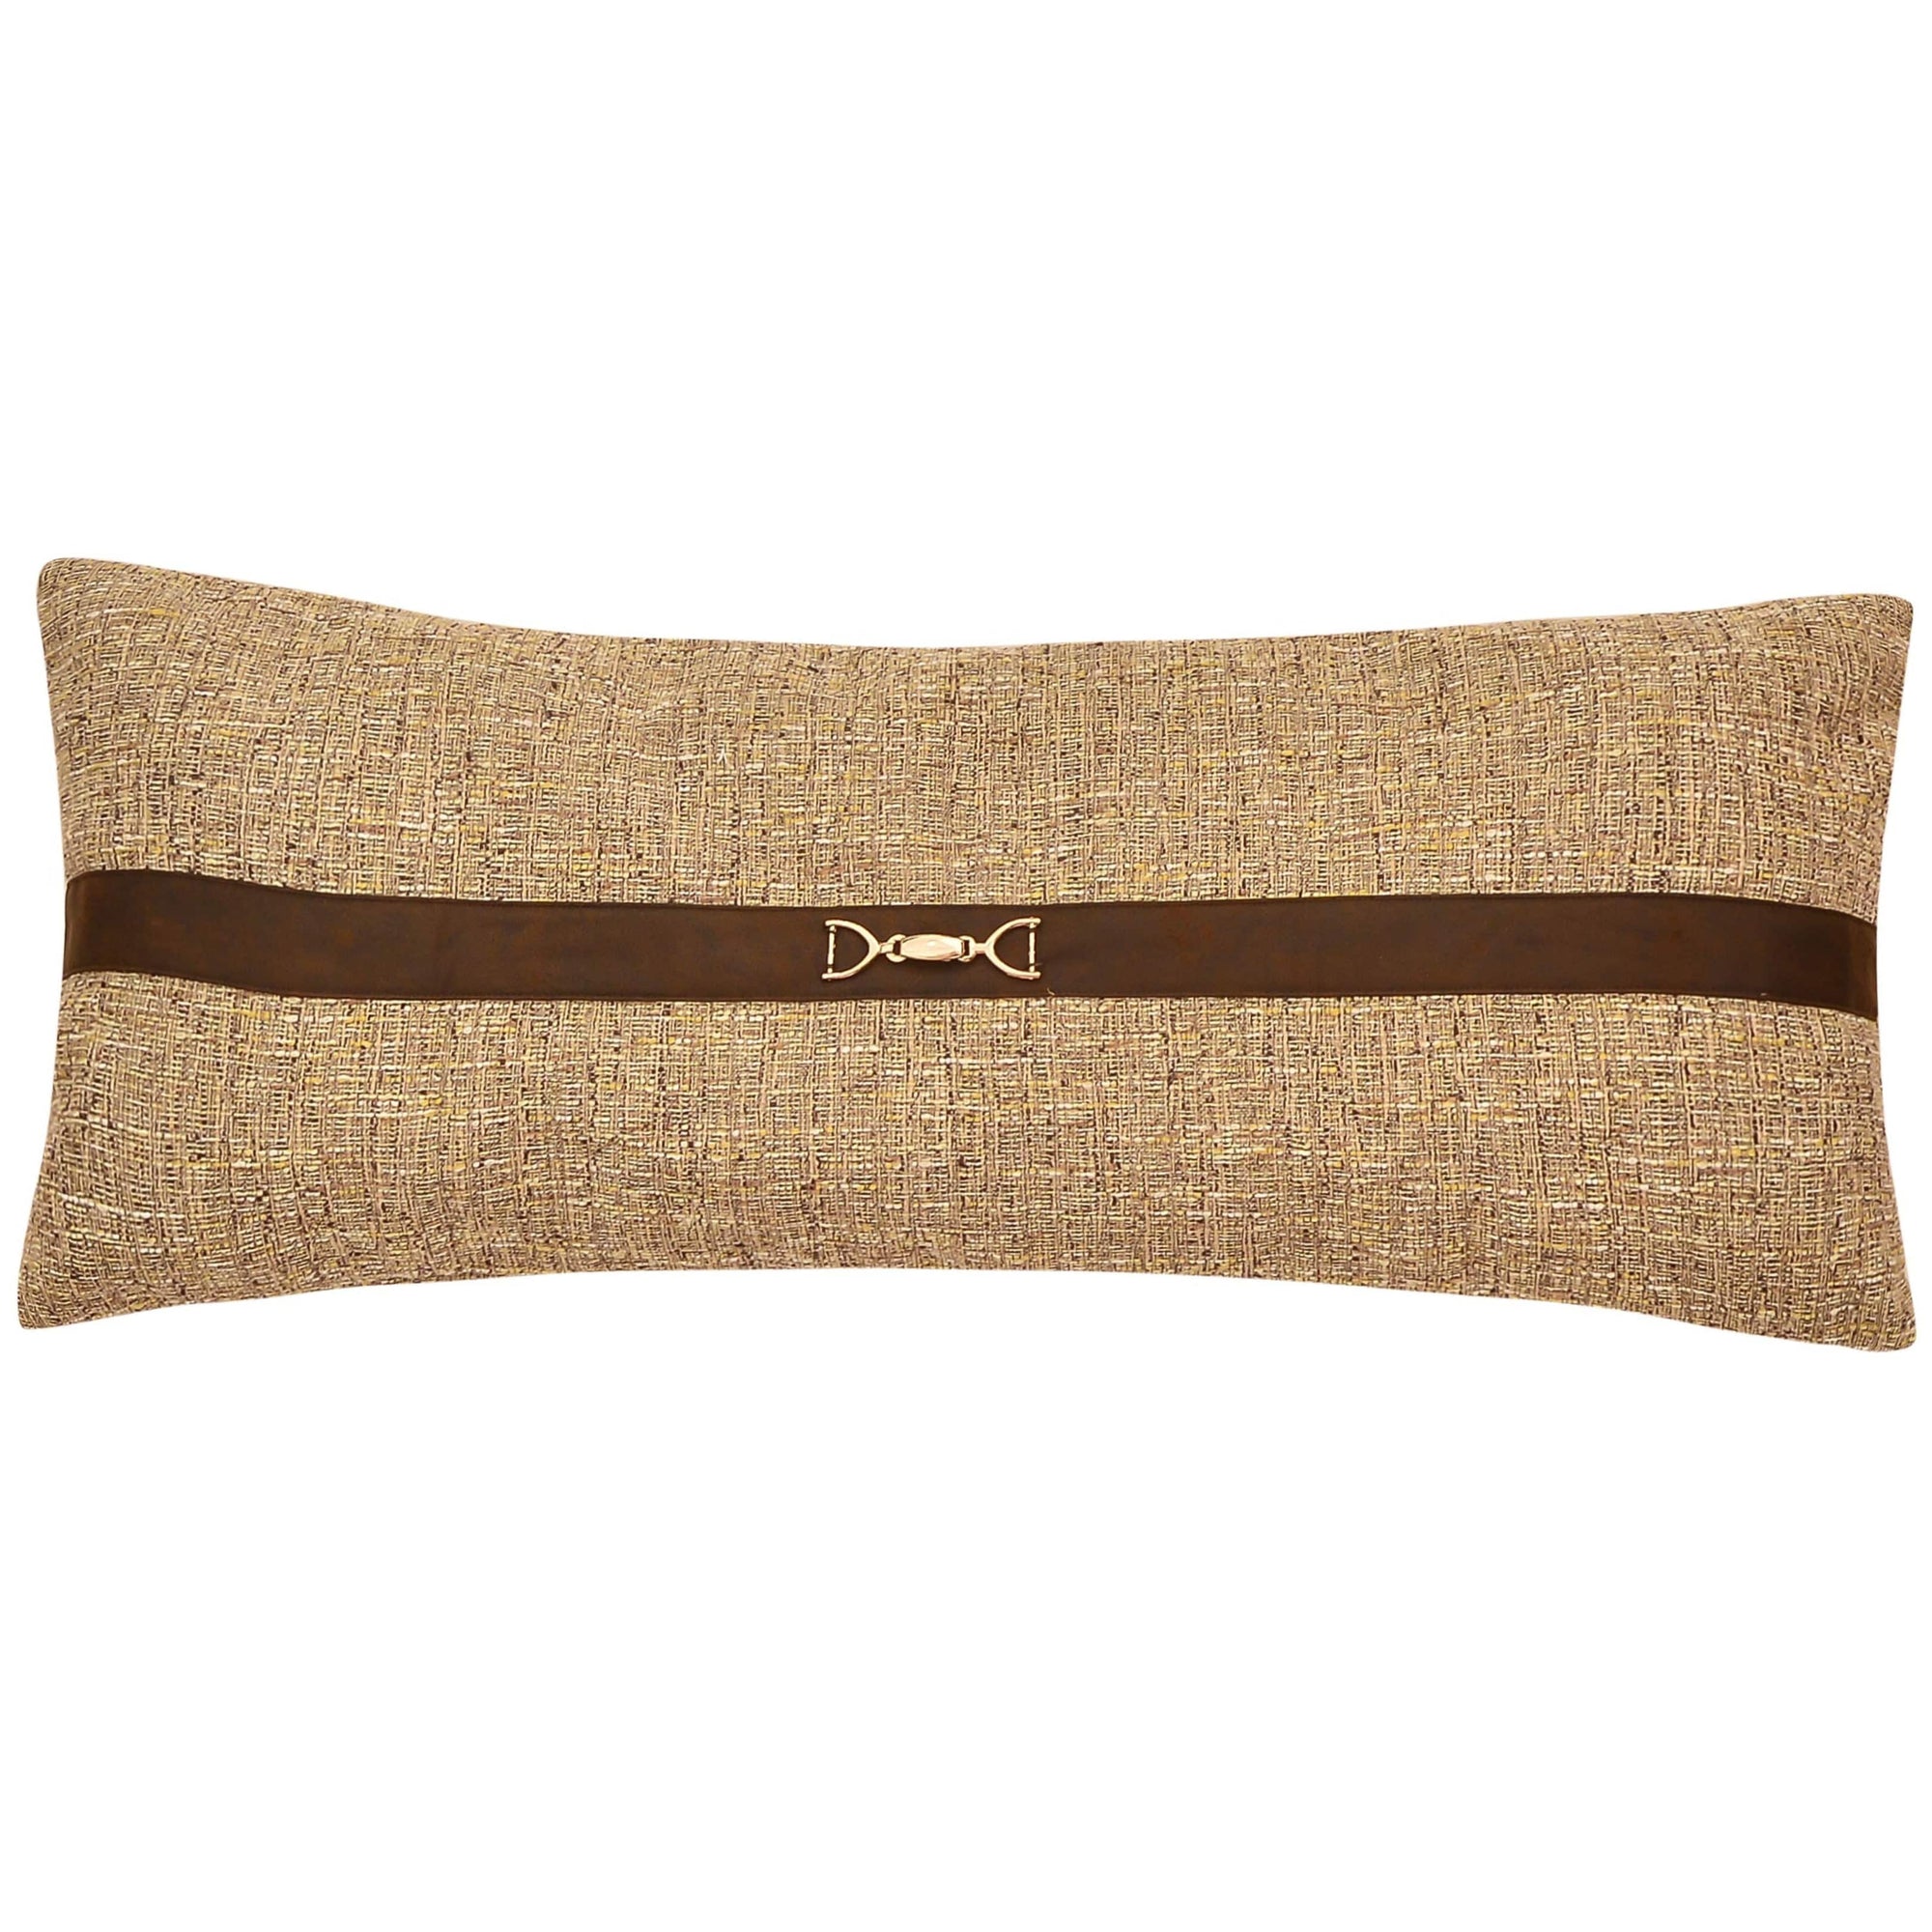 Tweed Lumbar Pillow with buckle details, 14x36 Pillow